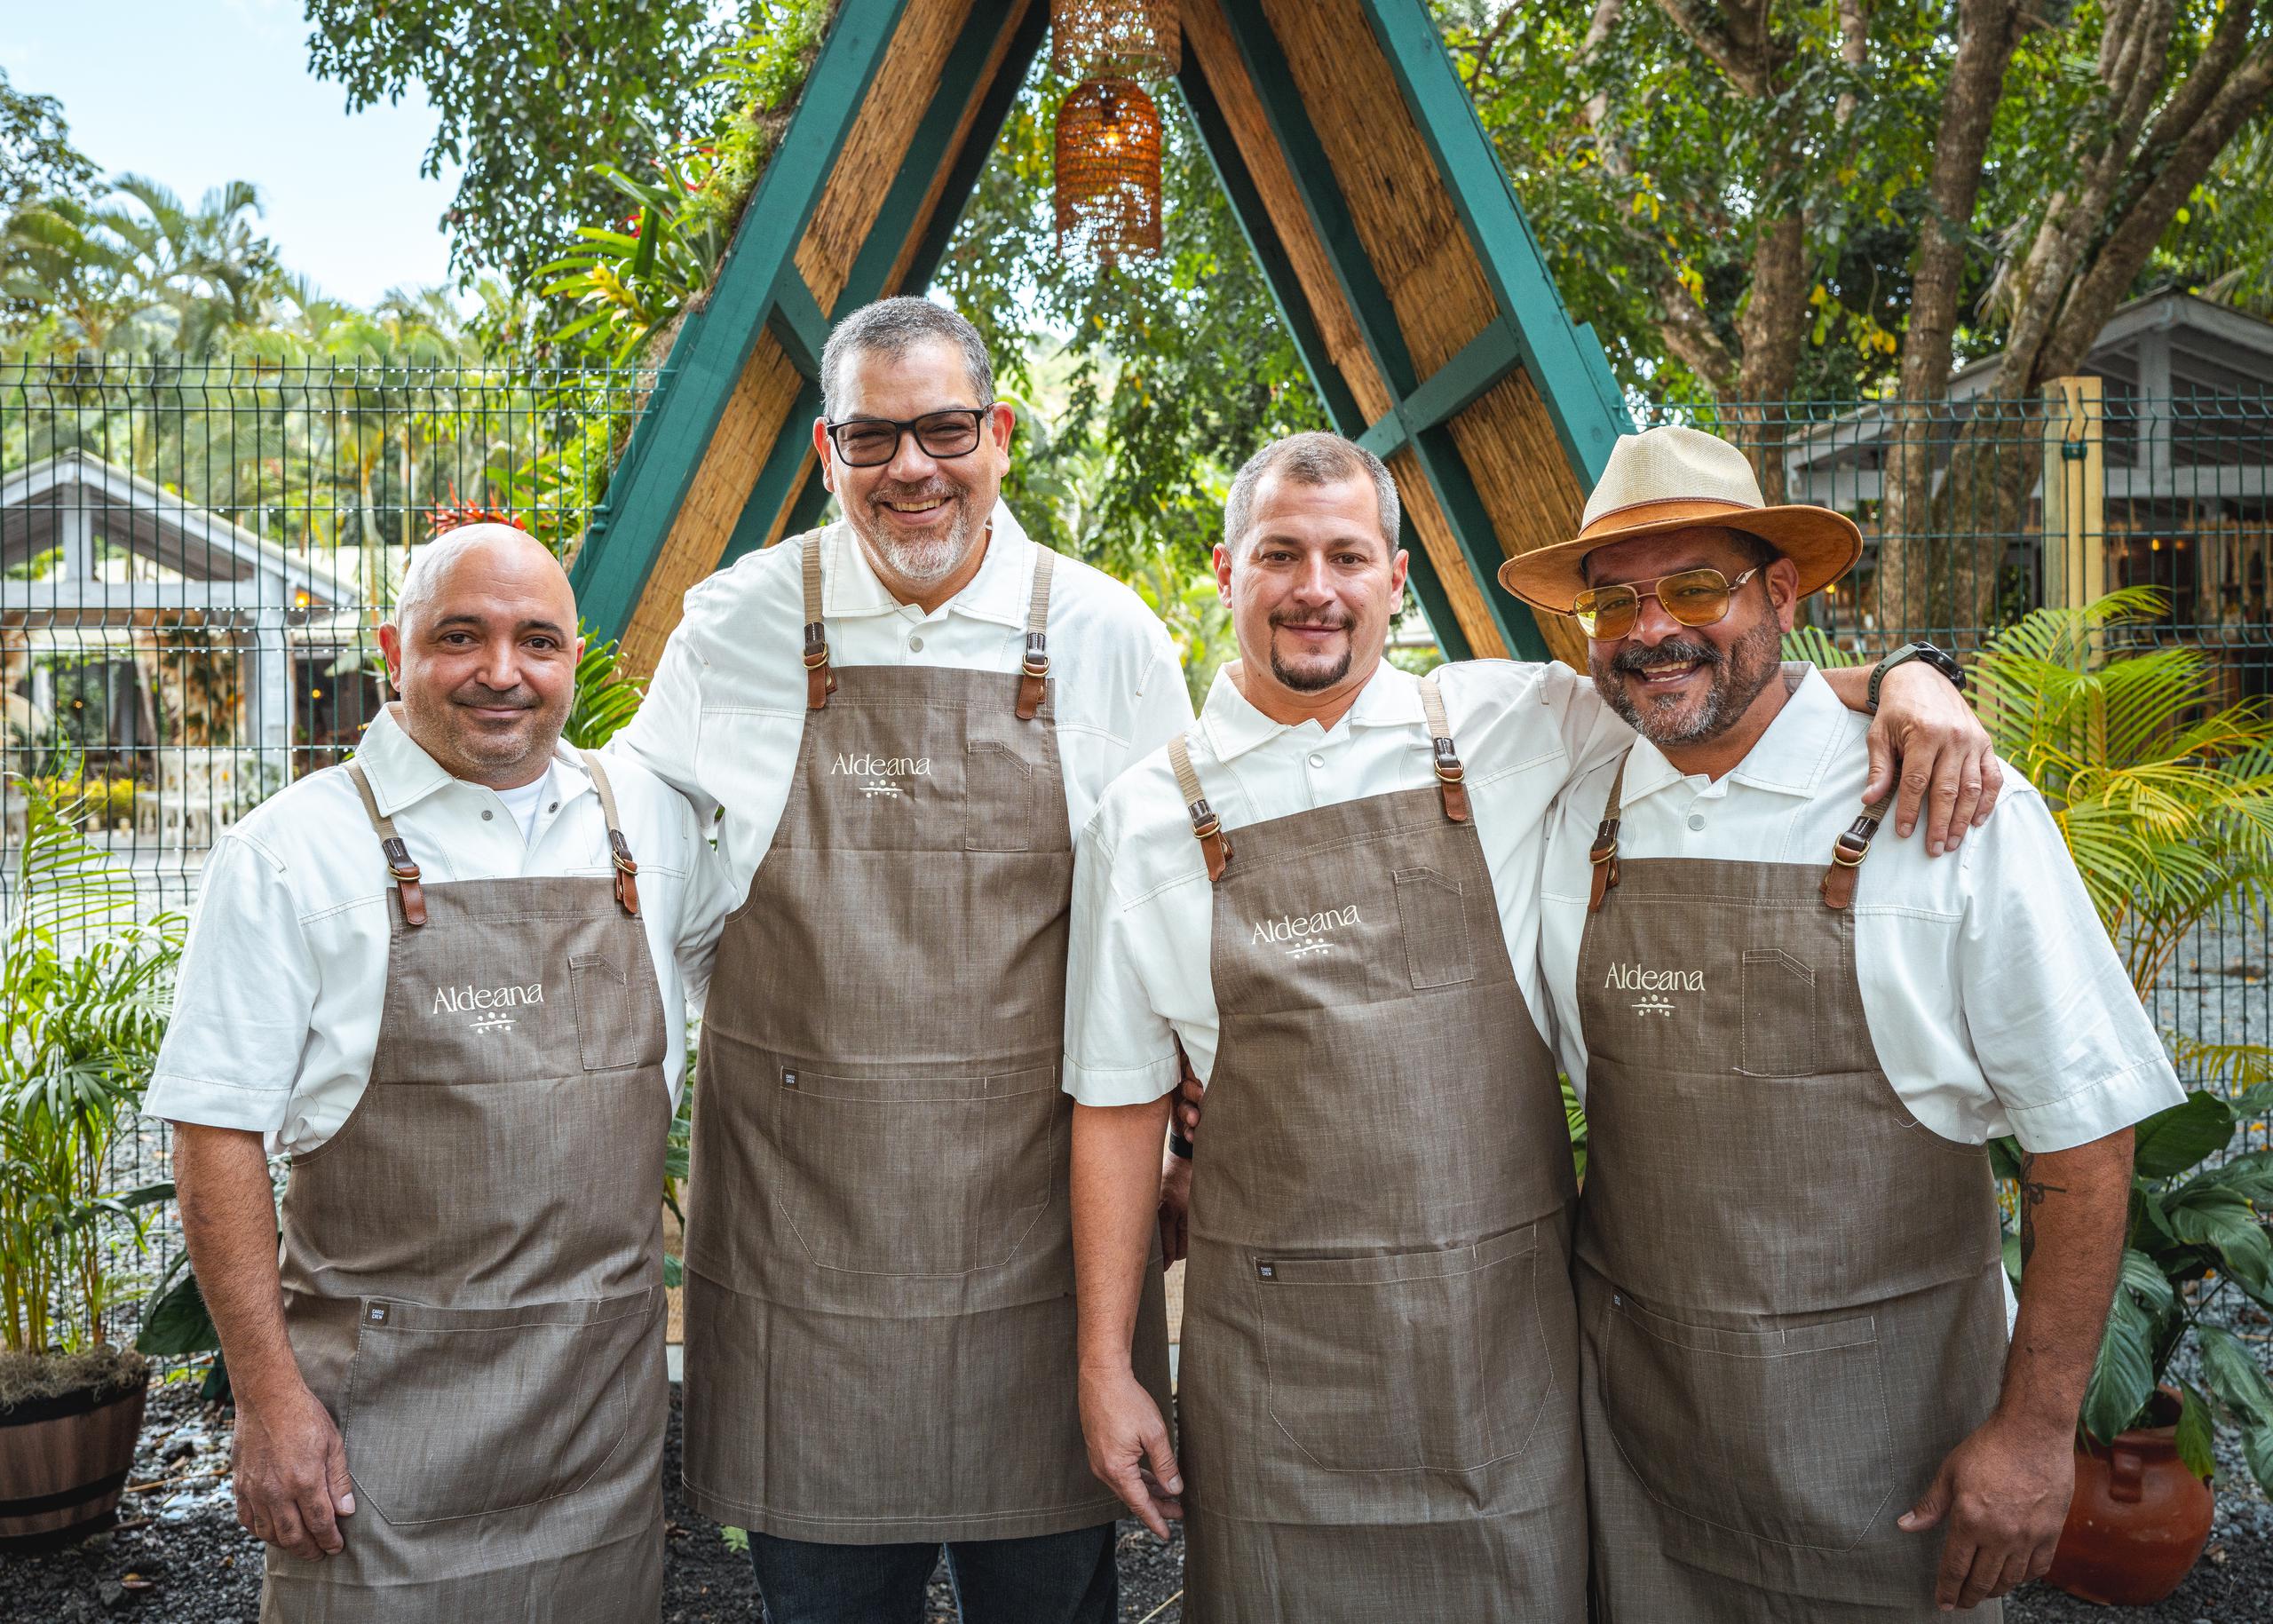 El equipo, reconocido por el restaurante Bacoa Finca y Fogón en Juncos, busca celebrar el amor por las artes culinarias desde la montaña.